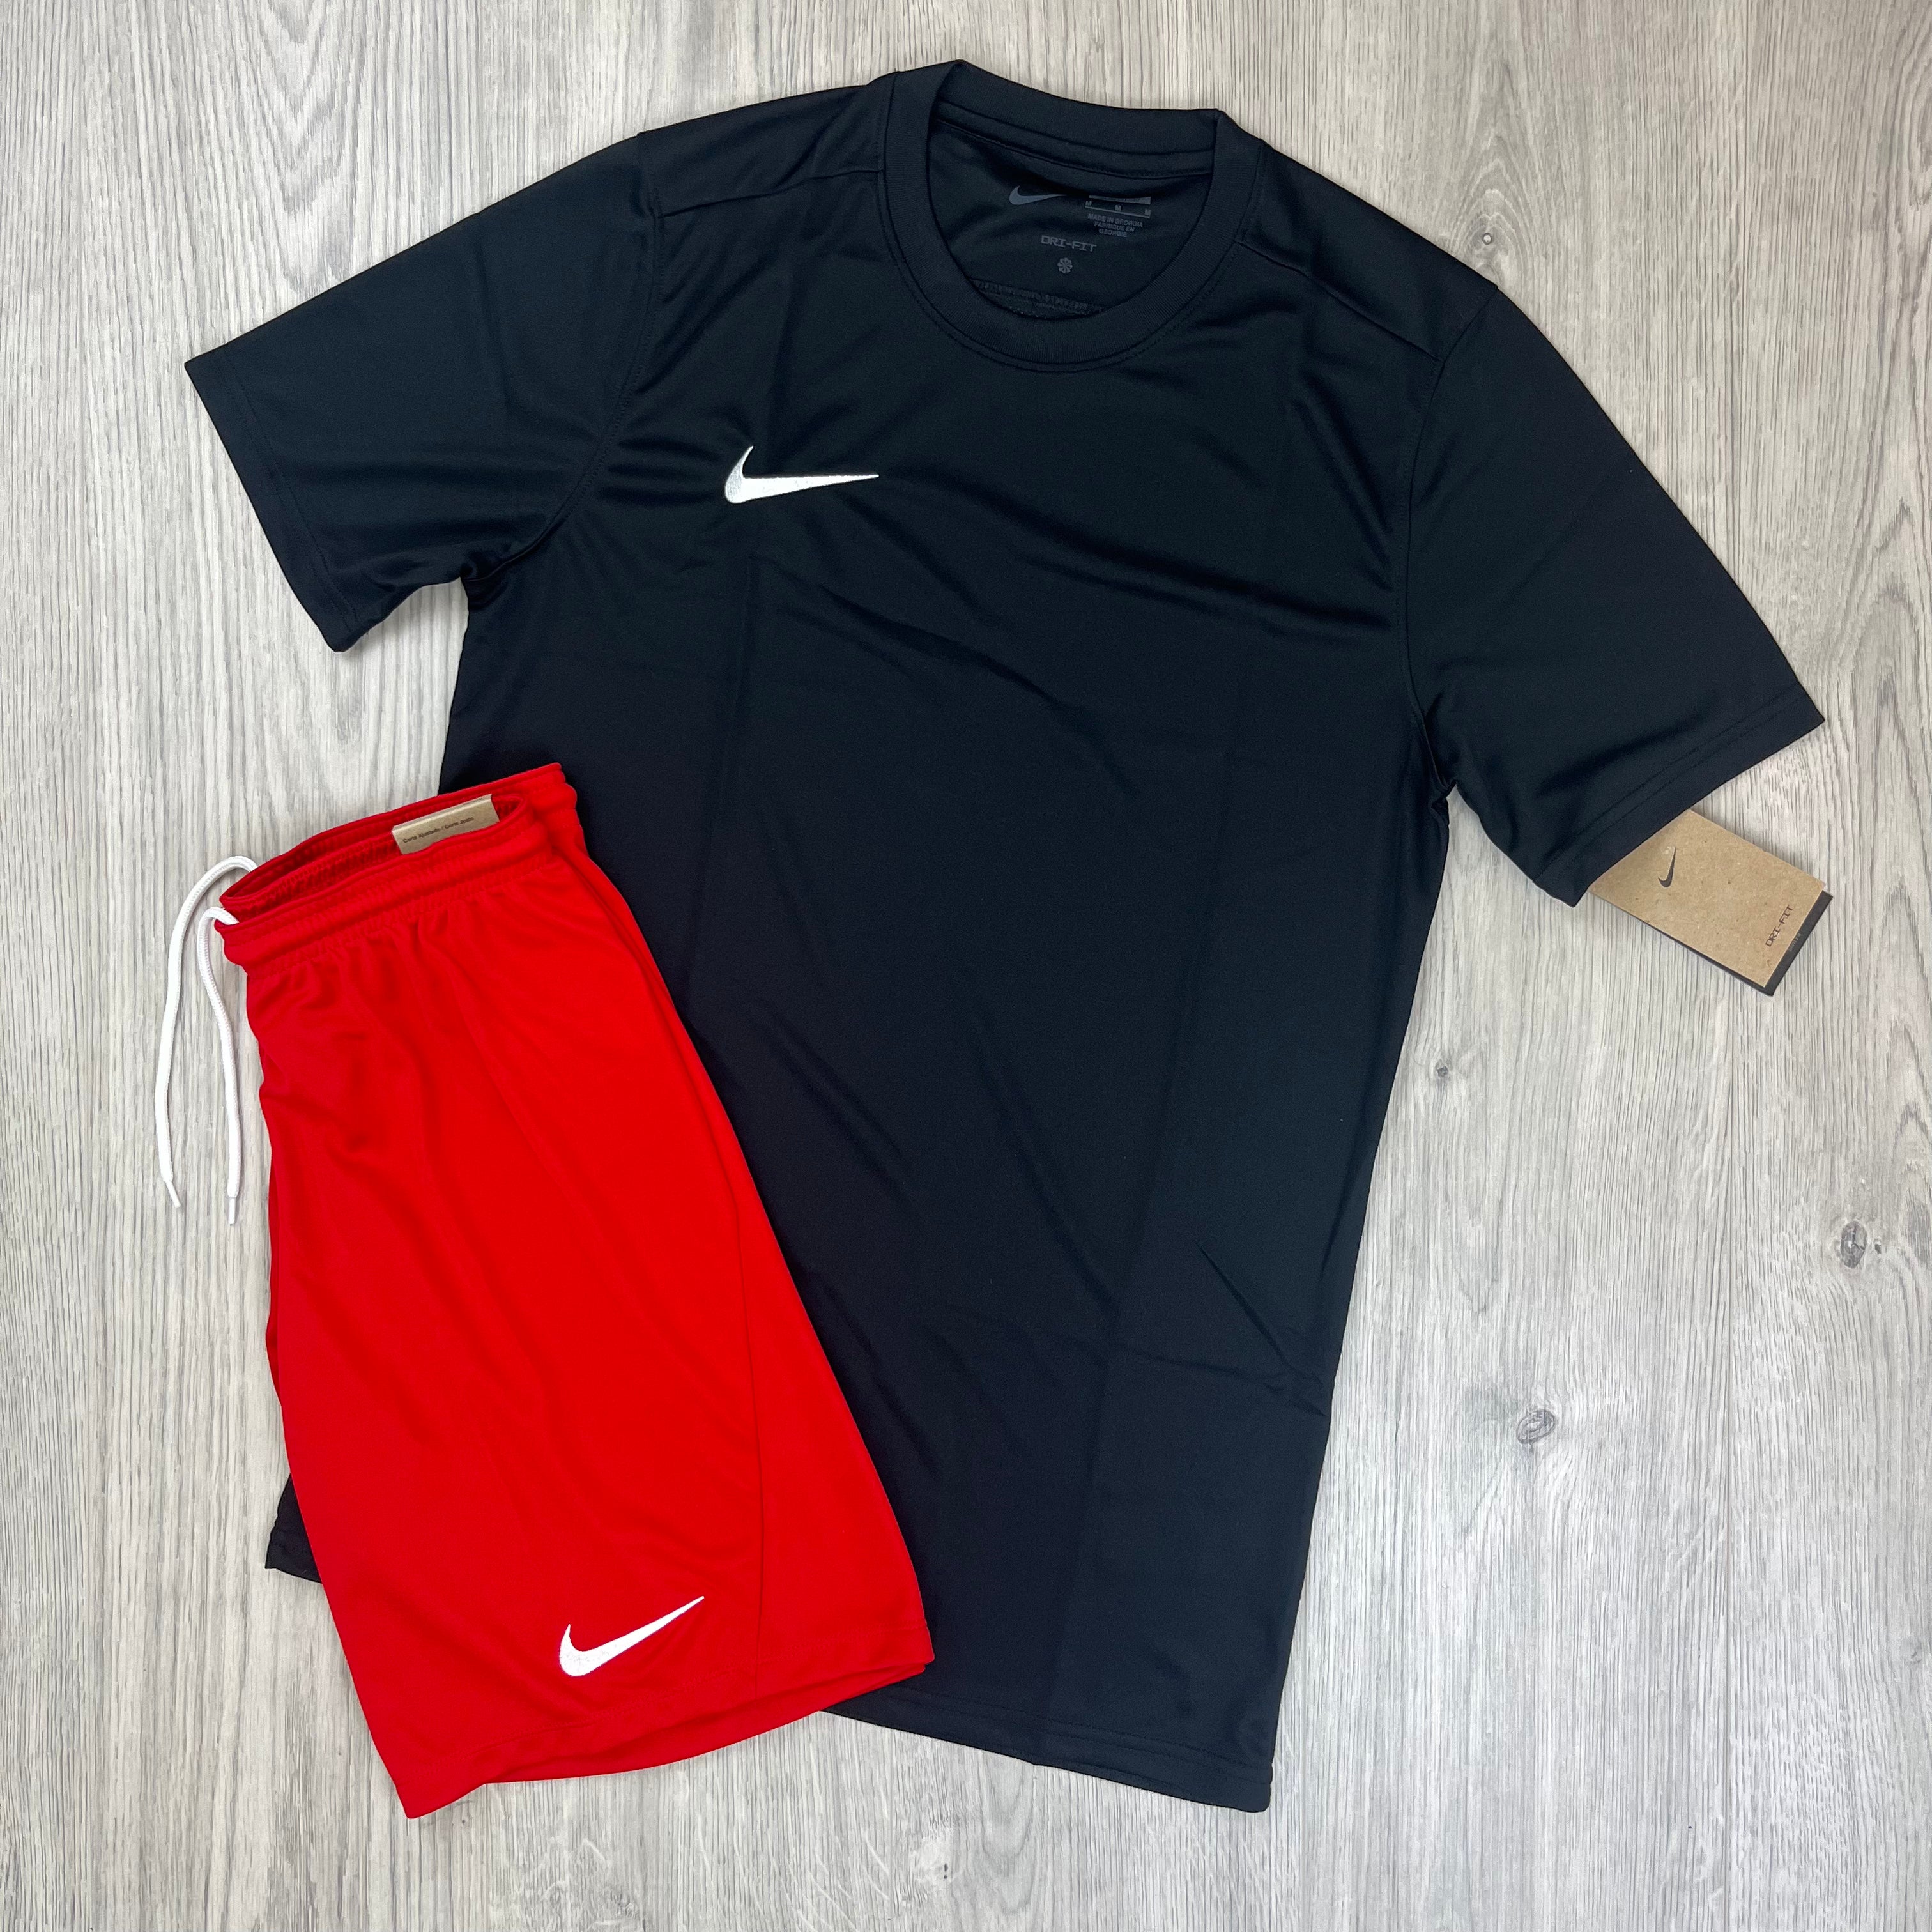 Nike Dri-Fit Set - Black/Red